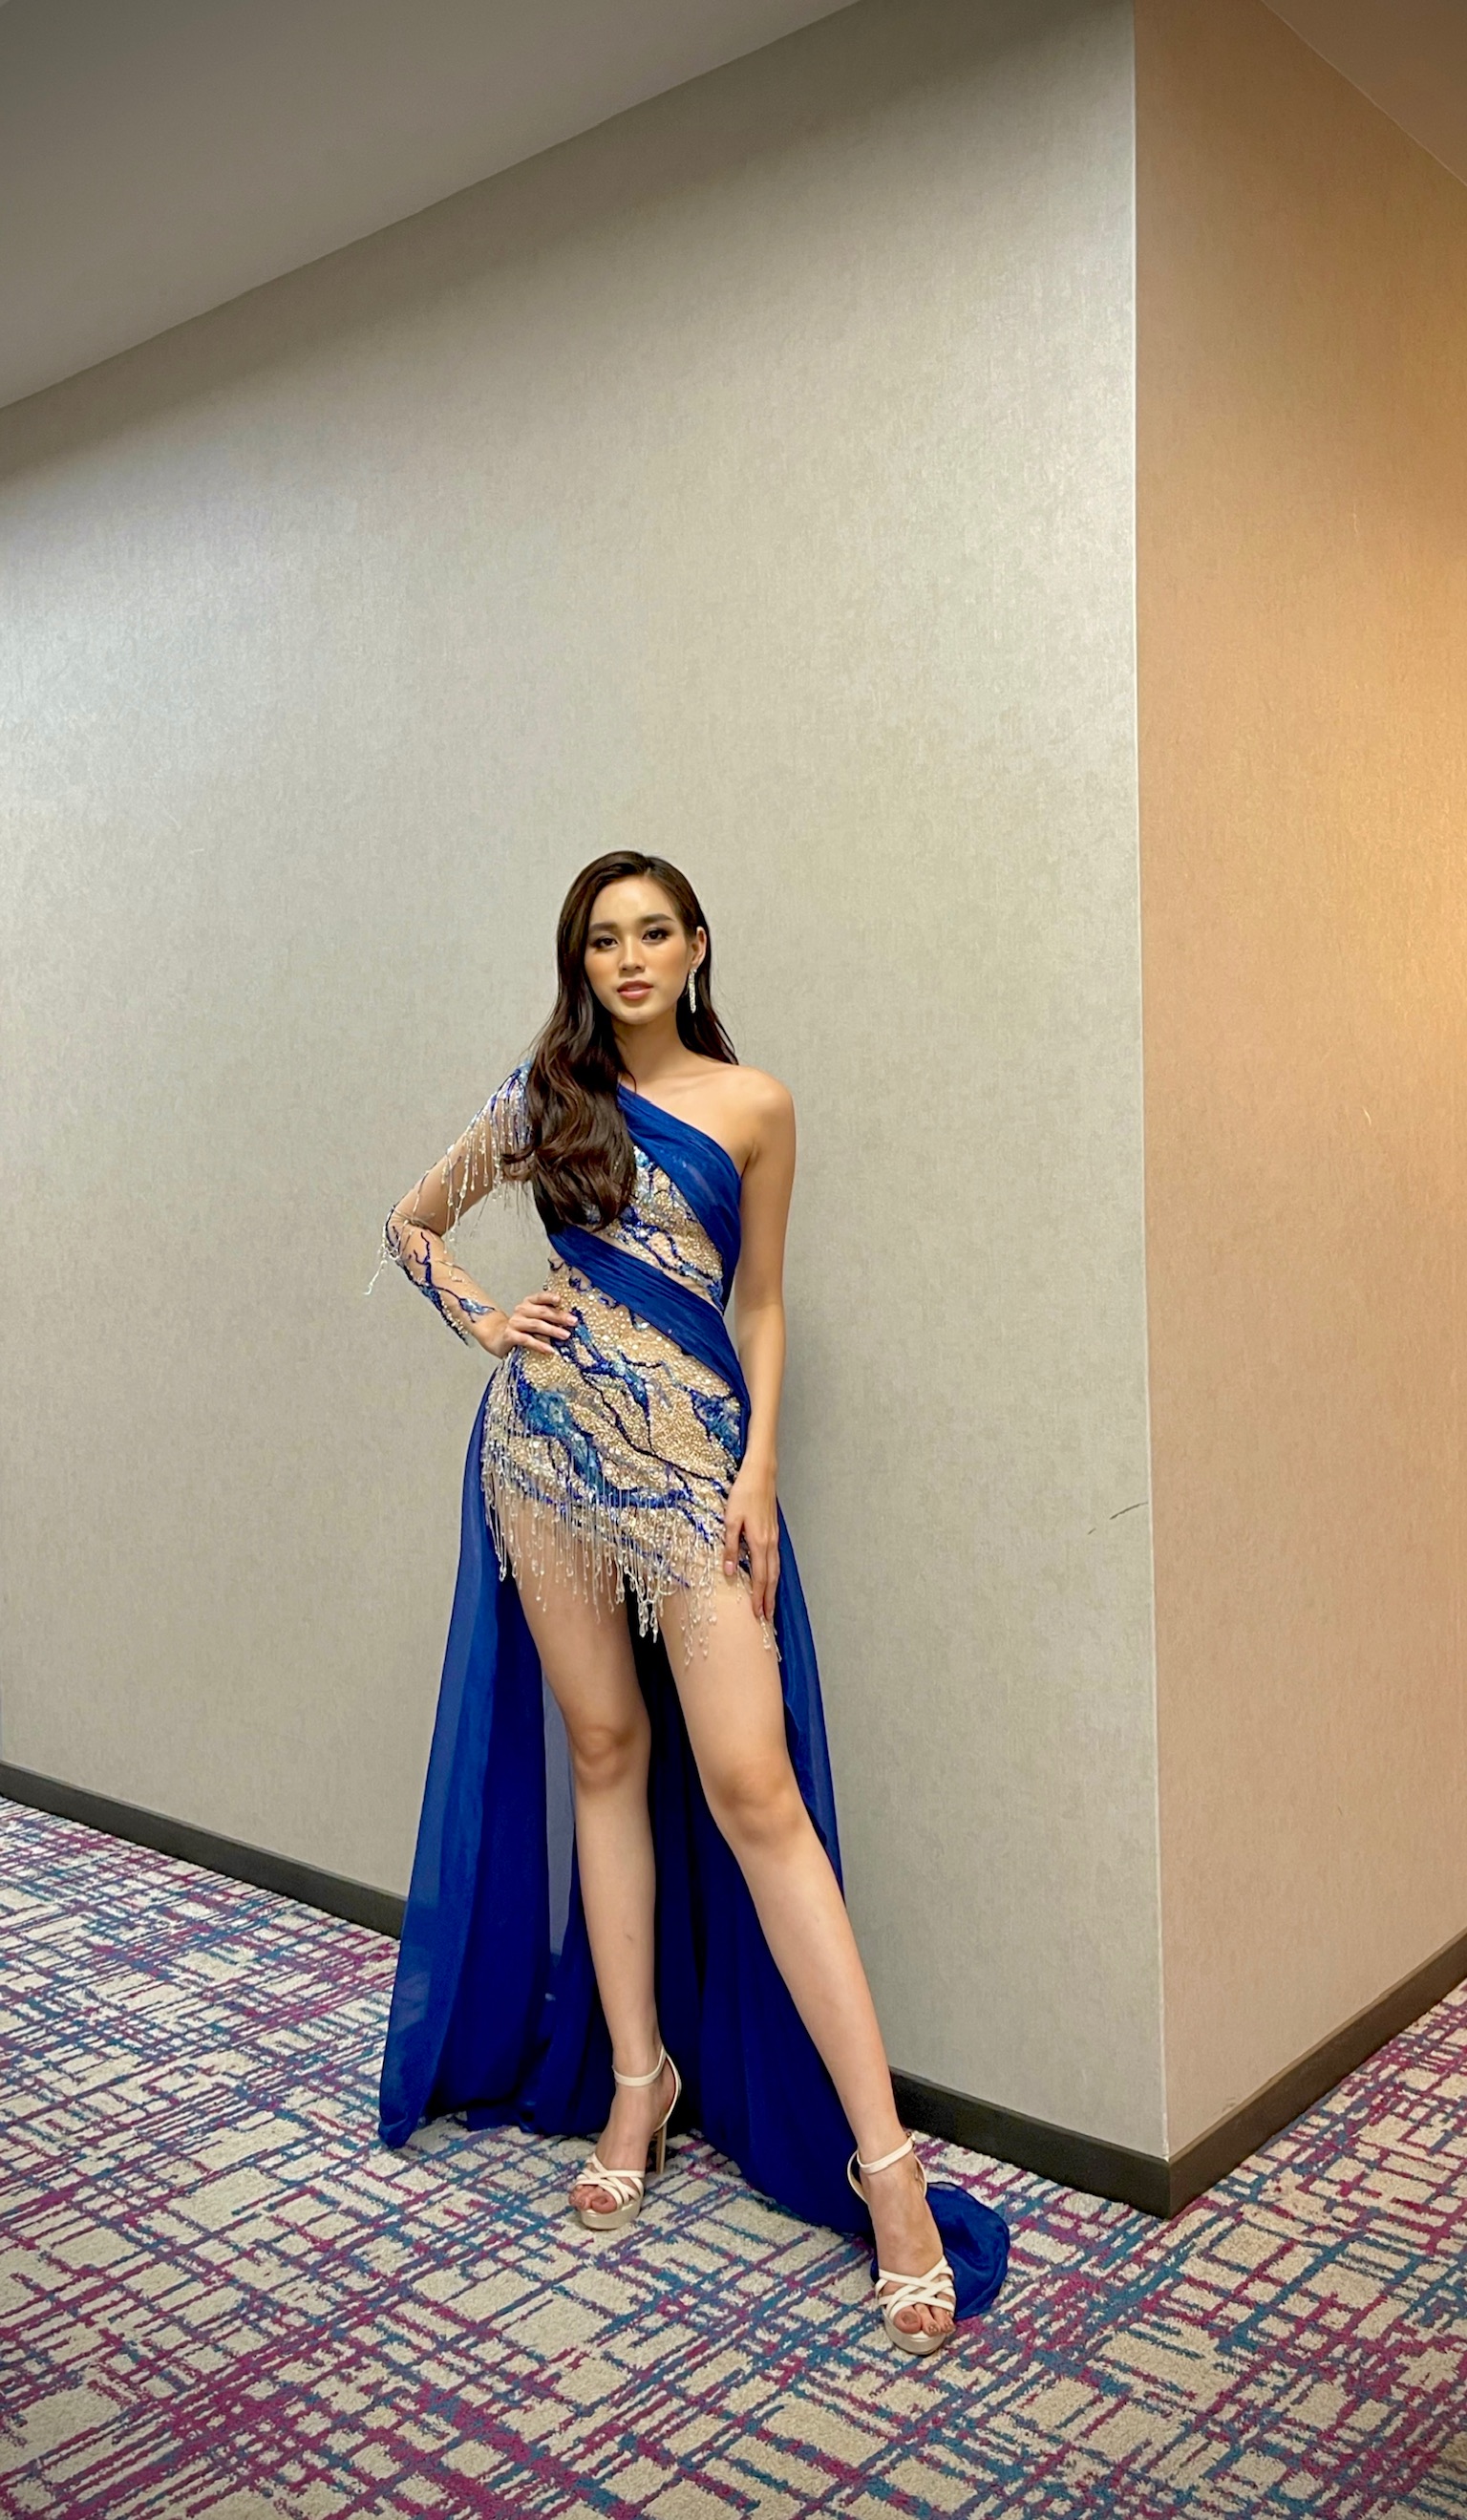 Hình ảnh Hoa hậu Đỗ Thị Hà trong hậu trường được cô đăng tải trên trang cá nhân